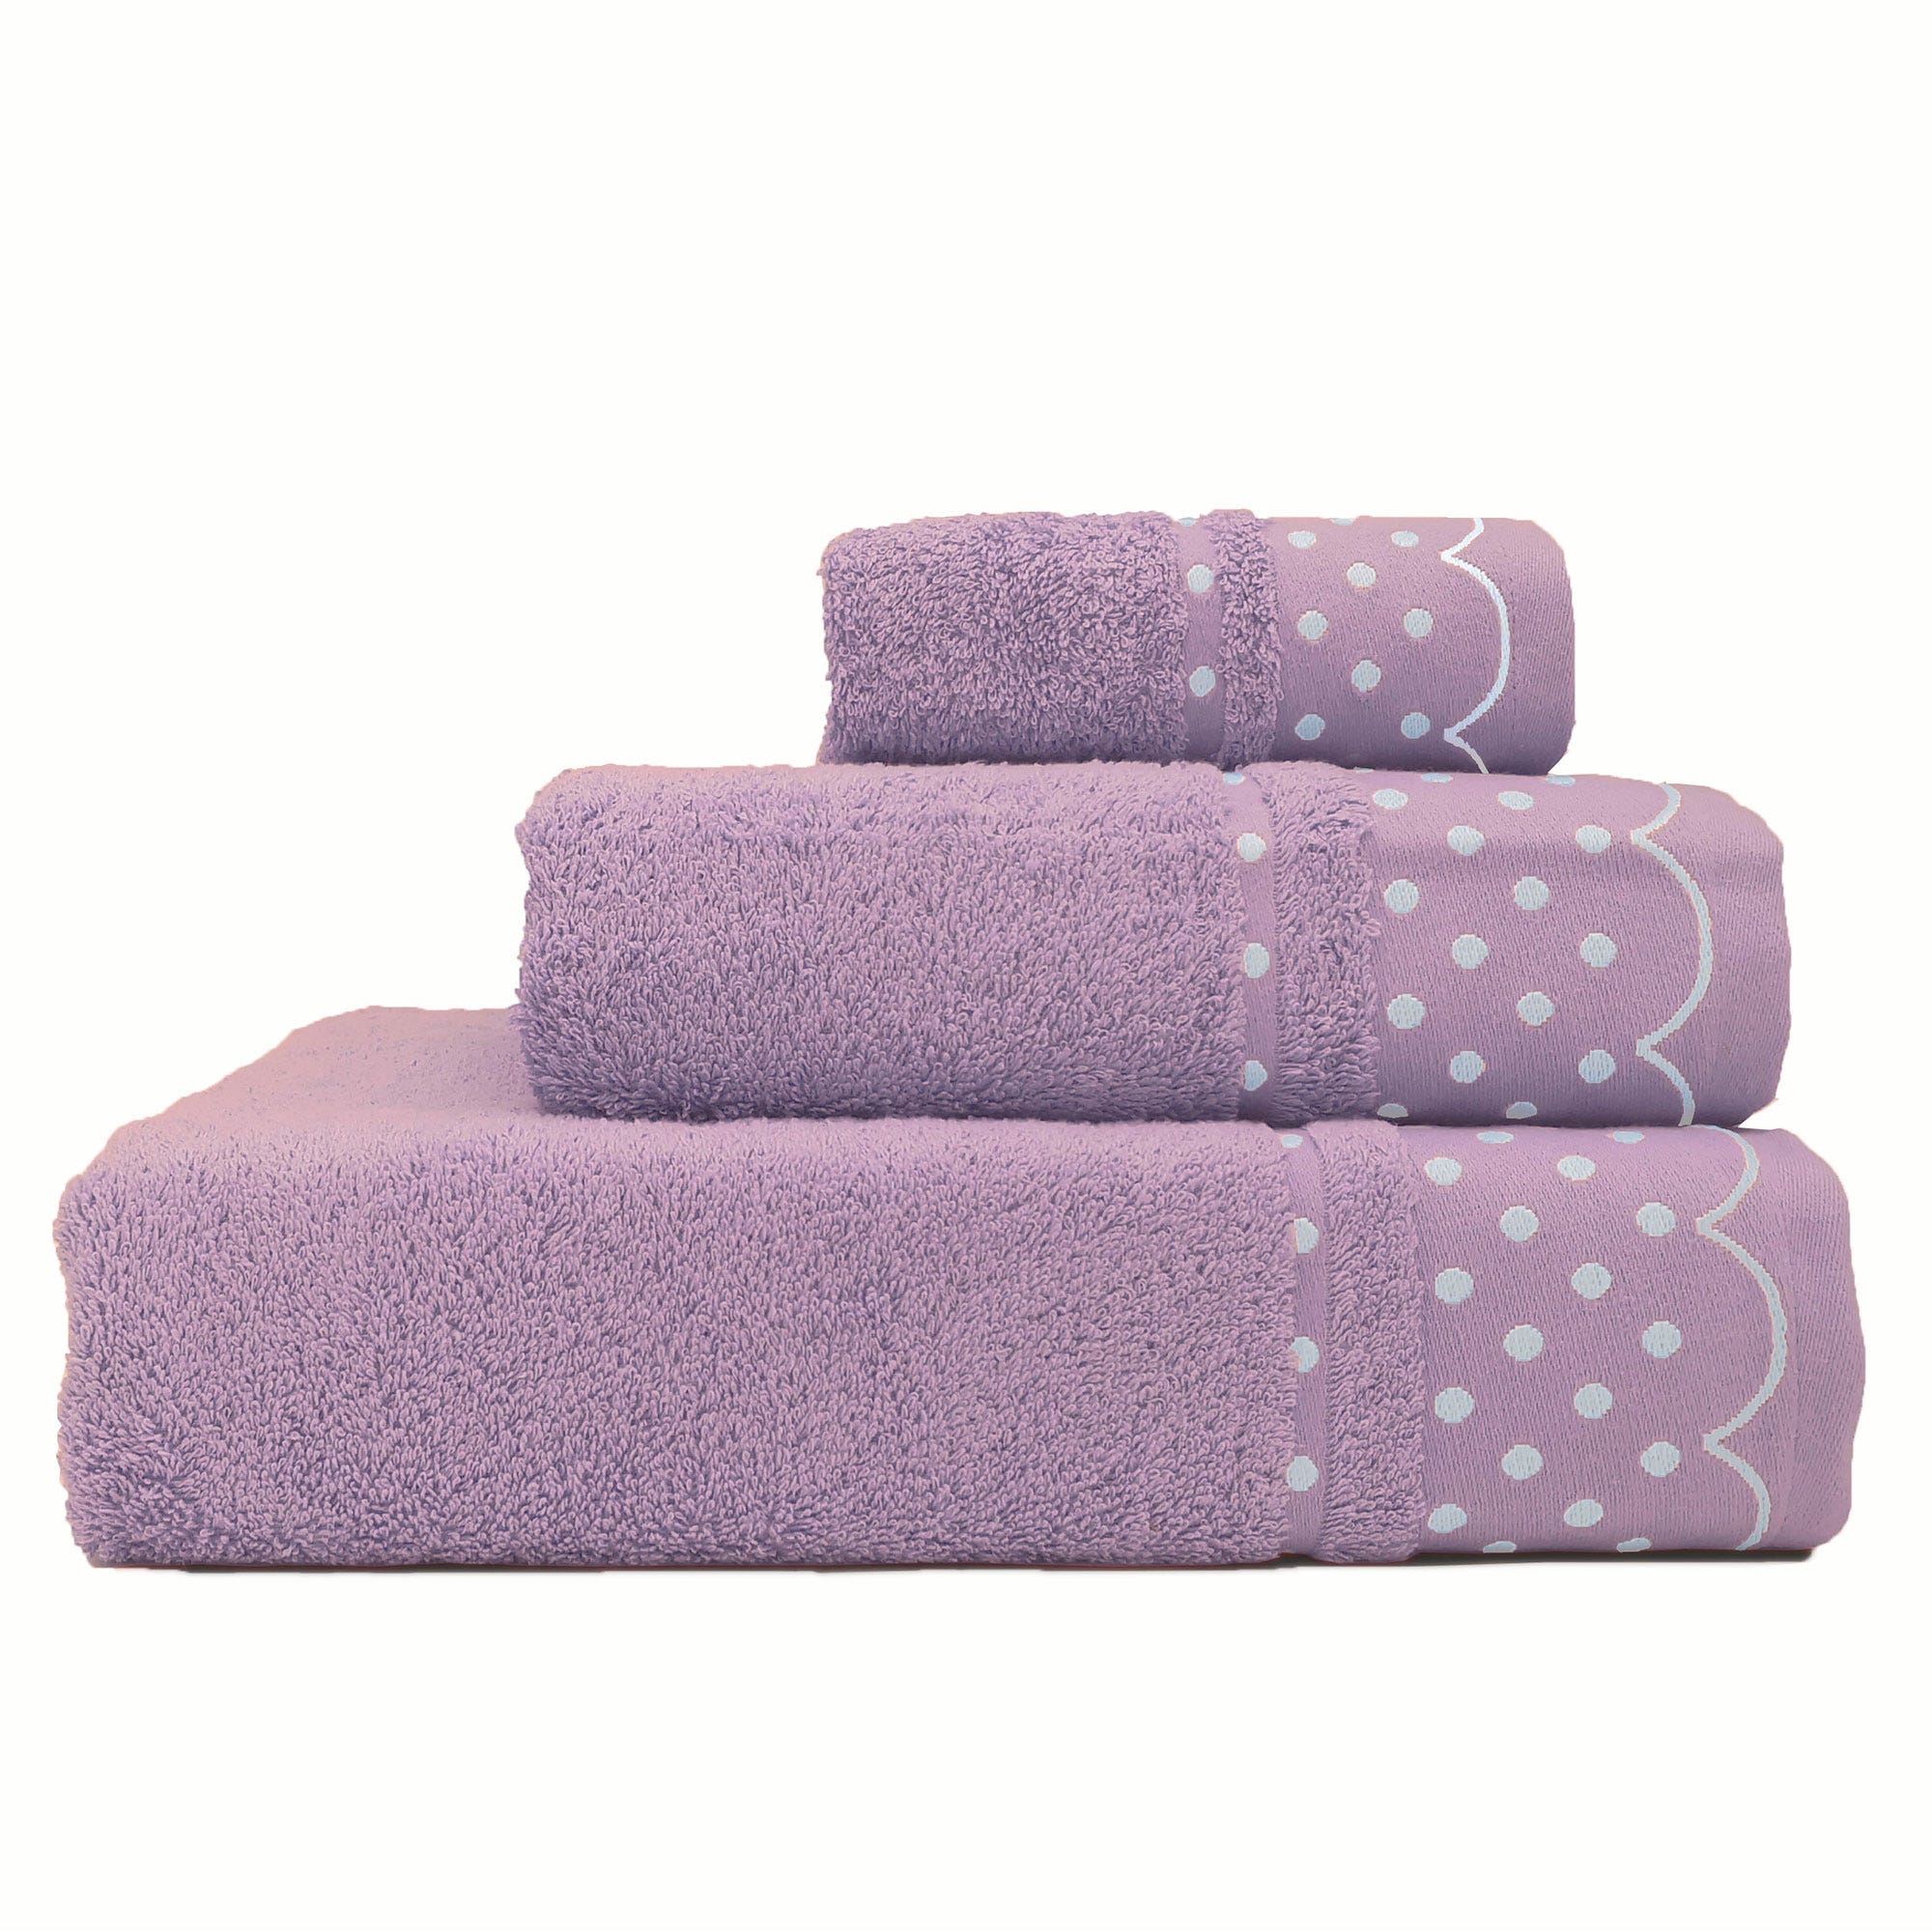 Comprar juegos de toallas para baño – Llar Textil